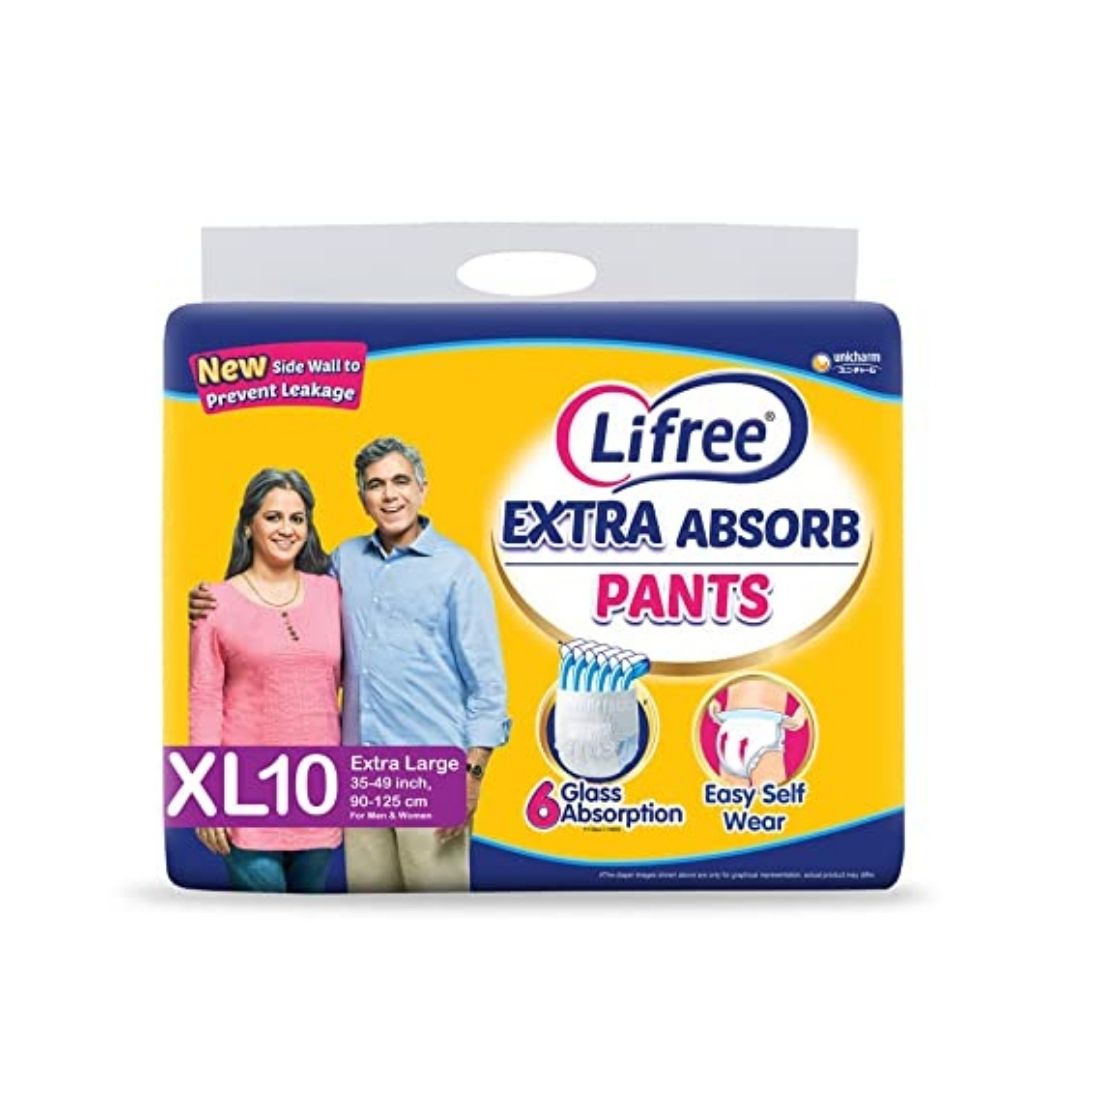 Lifree Adult Diaper Pants -10pcs - XL